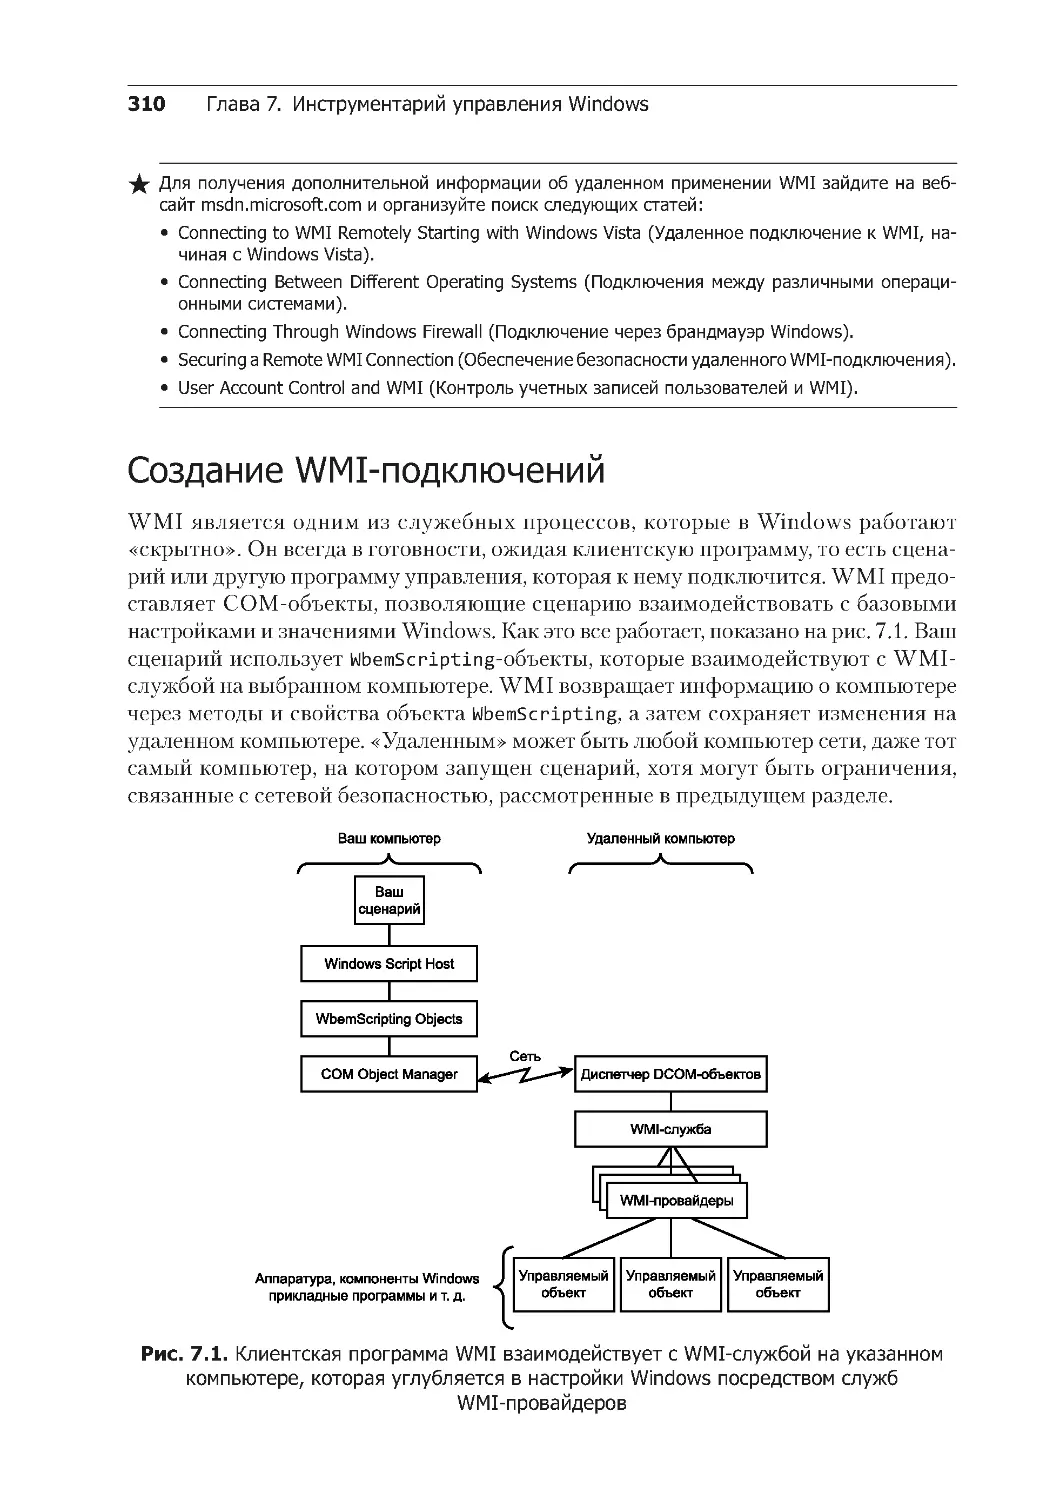 Создание WMI-подключений